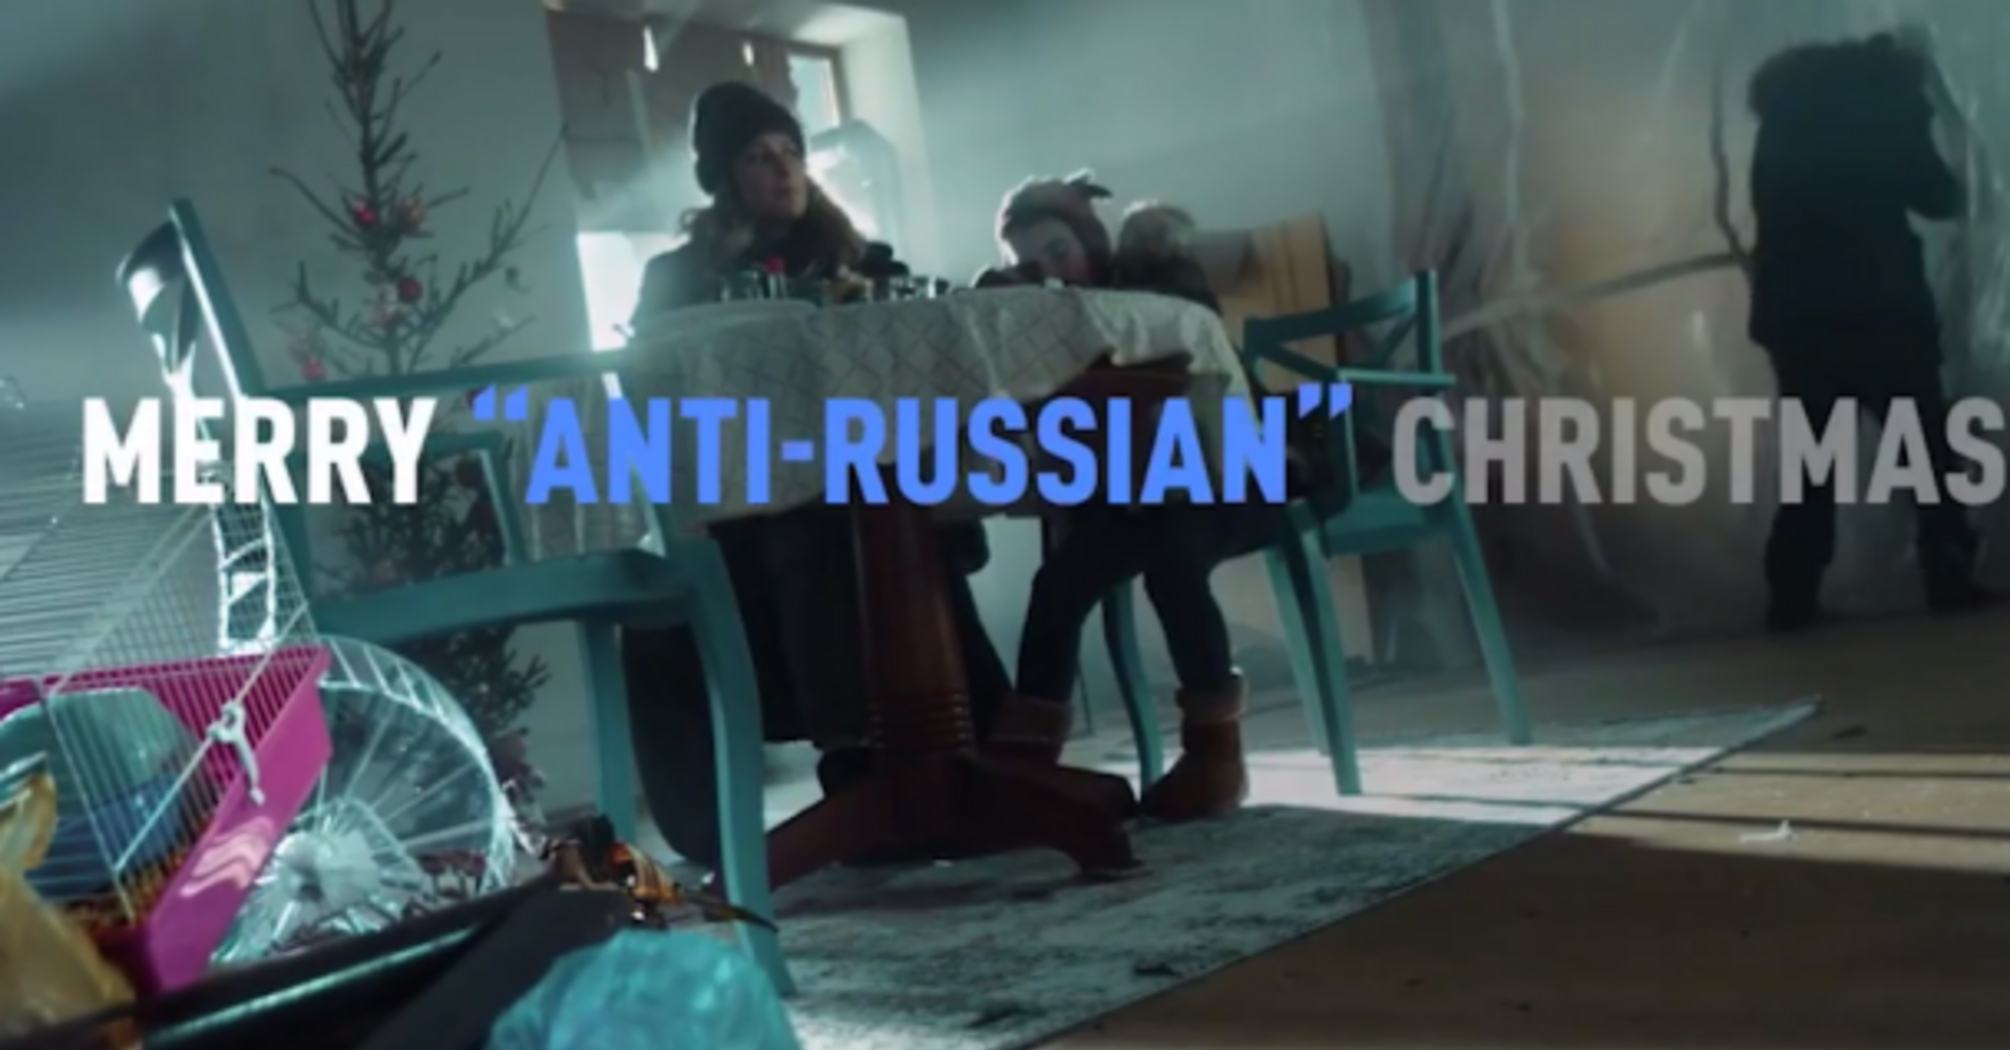 Пропагандистский ролик Russia Today о замерзающей и голодающей европейской семье